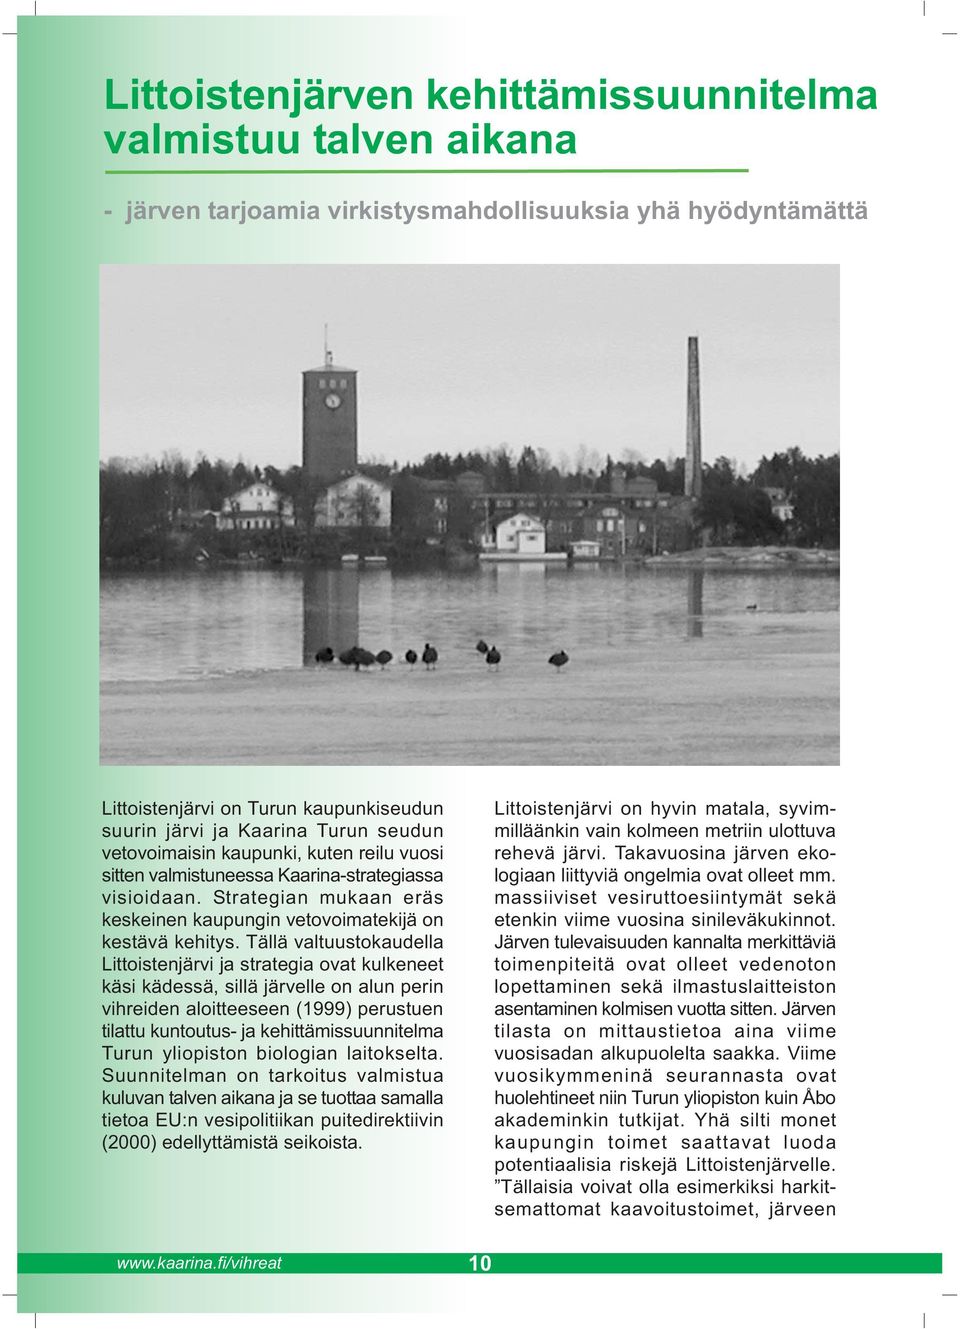 Tällä valtuustokaudella Littoistenjärvi ja strategia ovat kulkeneet käsi kädessä, sillä järvelle on alun perin vihreiden aloitteeseen (1999) perustuen tilattu kuntoutus- ja kehittämissuunnitelma